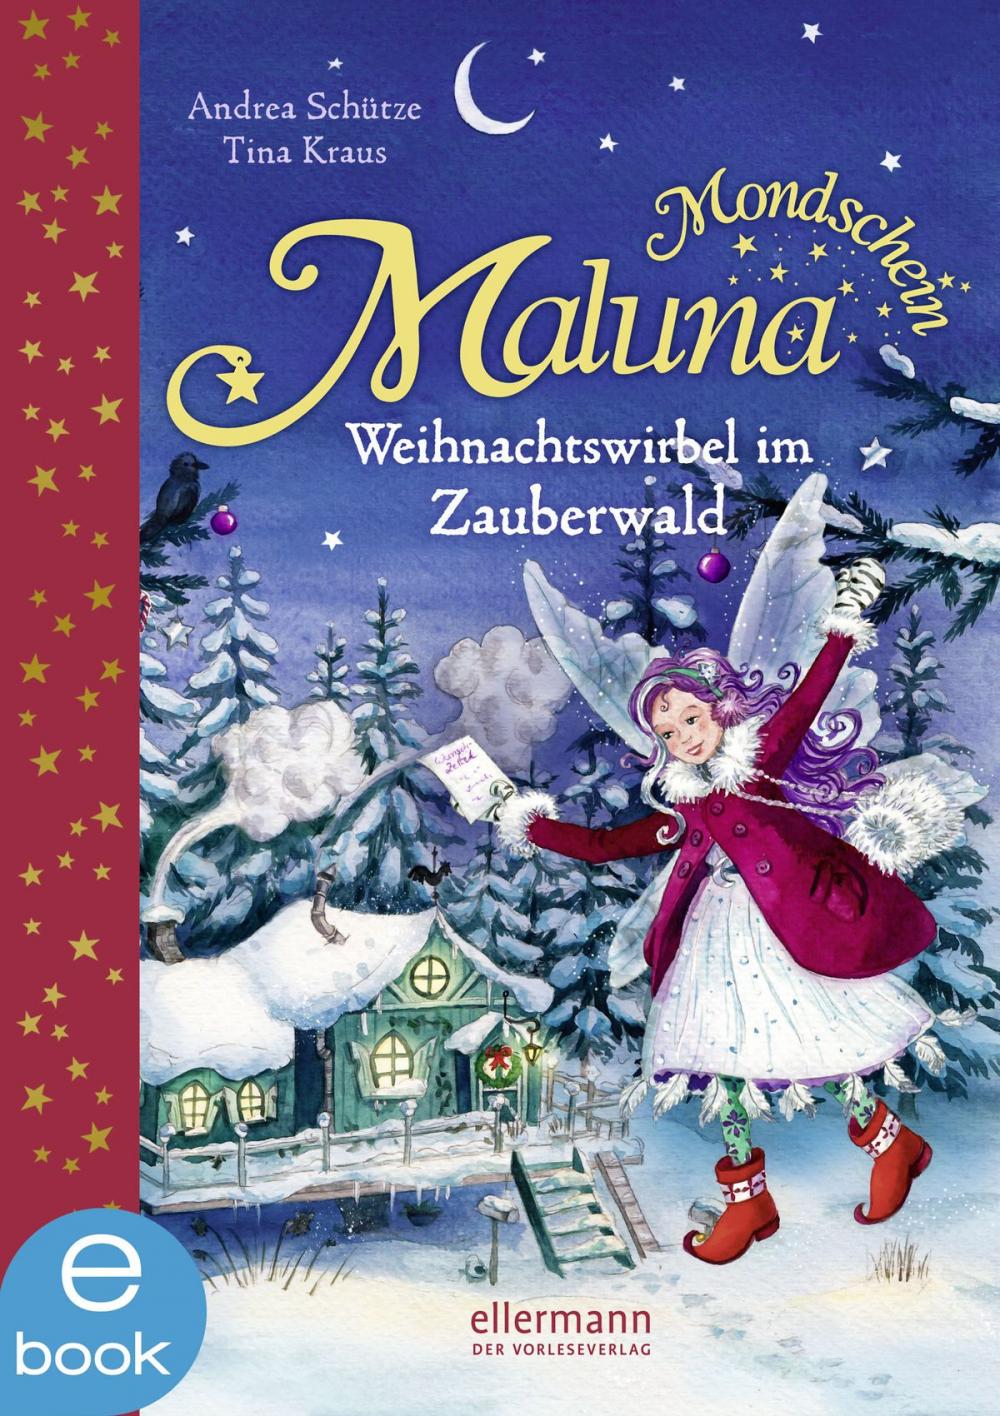 Big bigCover of Maluna Mondschein - Weihnachtswirbel im Zauberwald